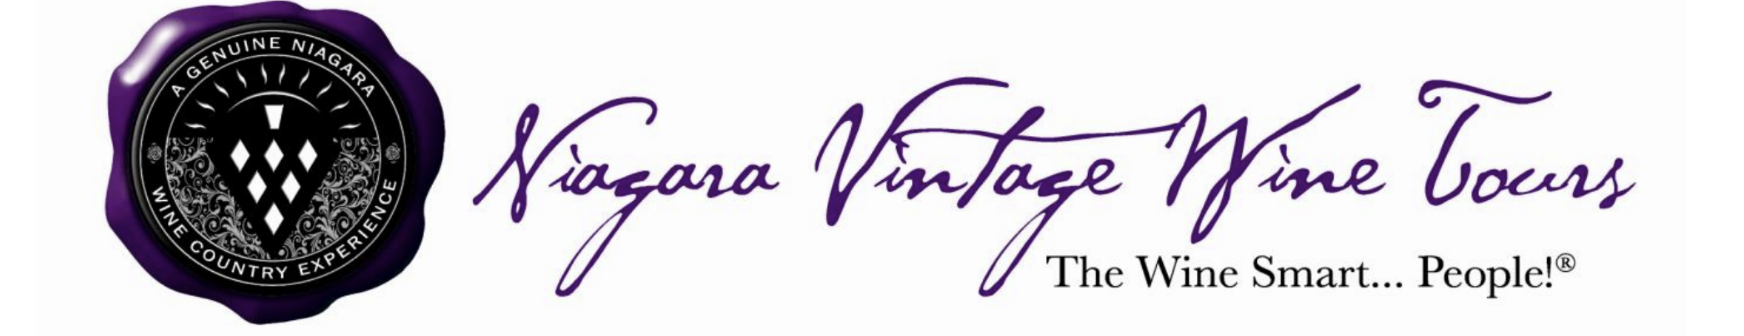 Niagara Vintage Wine Tour logo